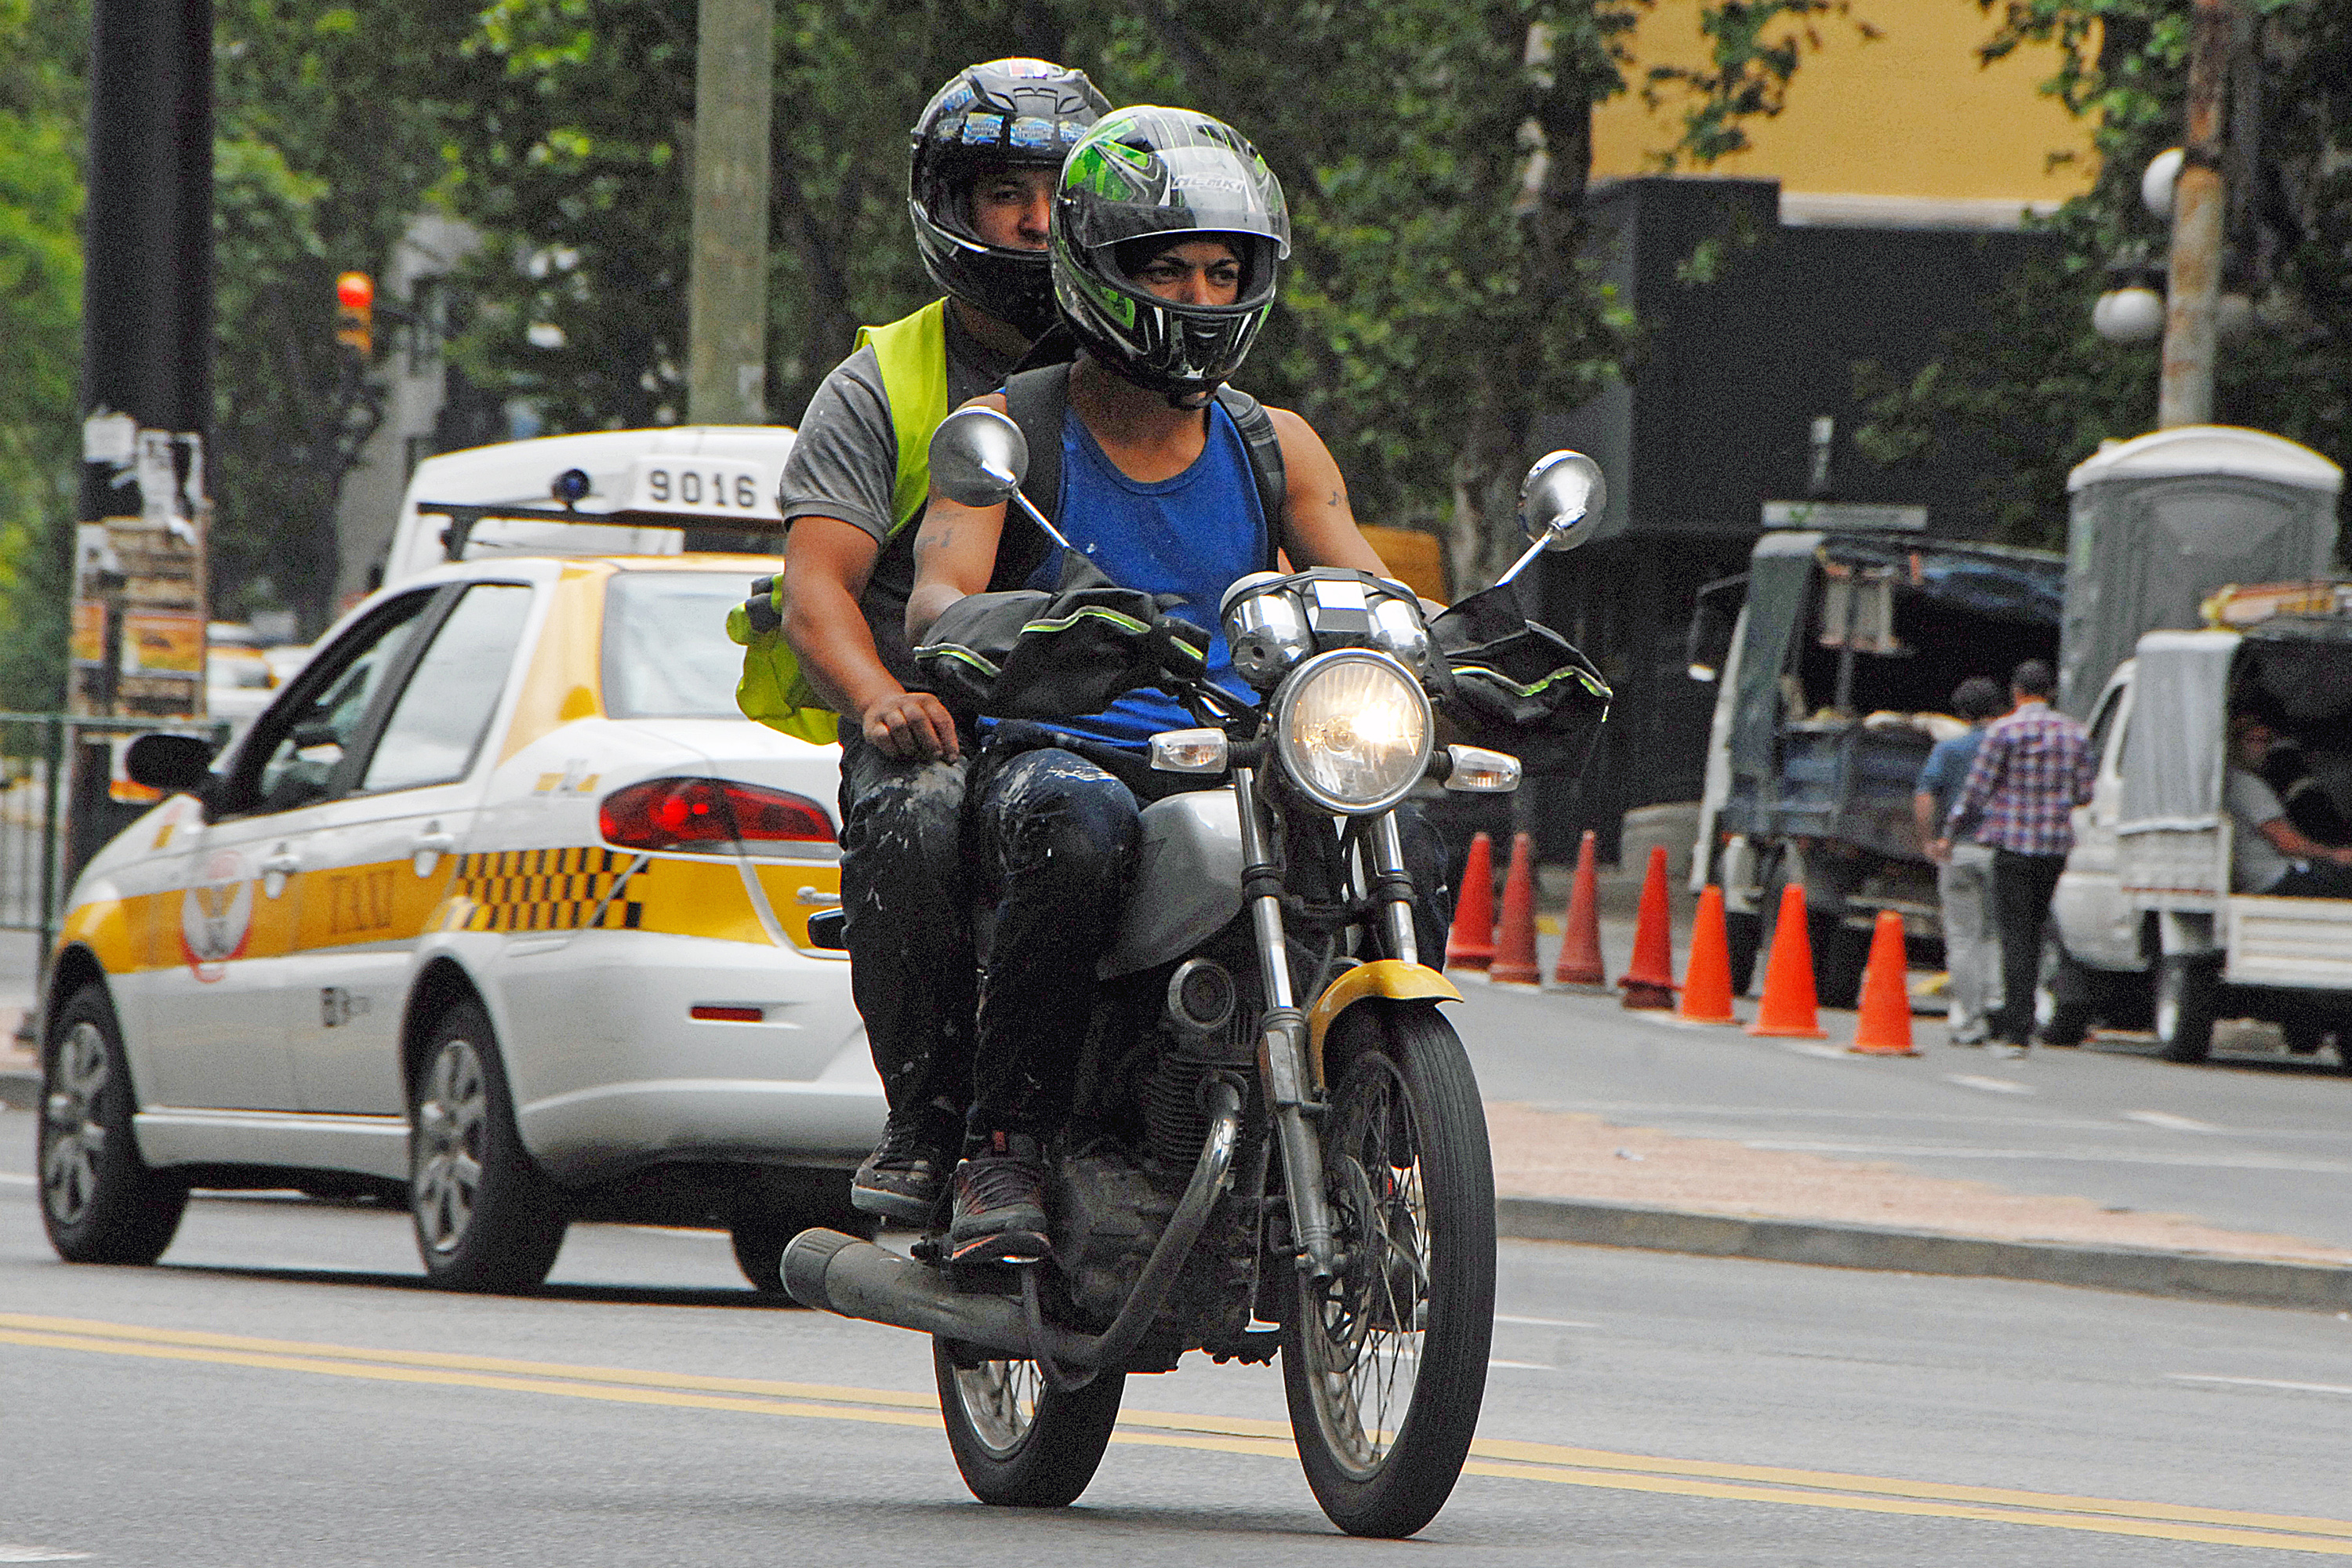 Moto circulacndo en avenida 18 de julio